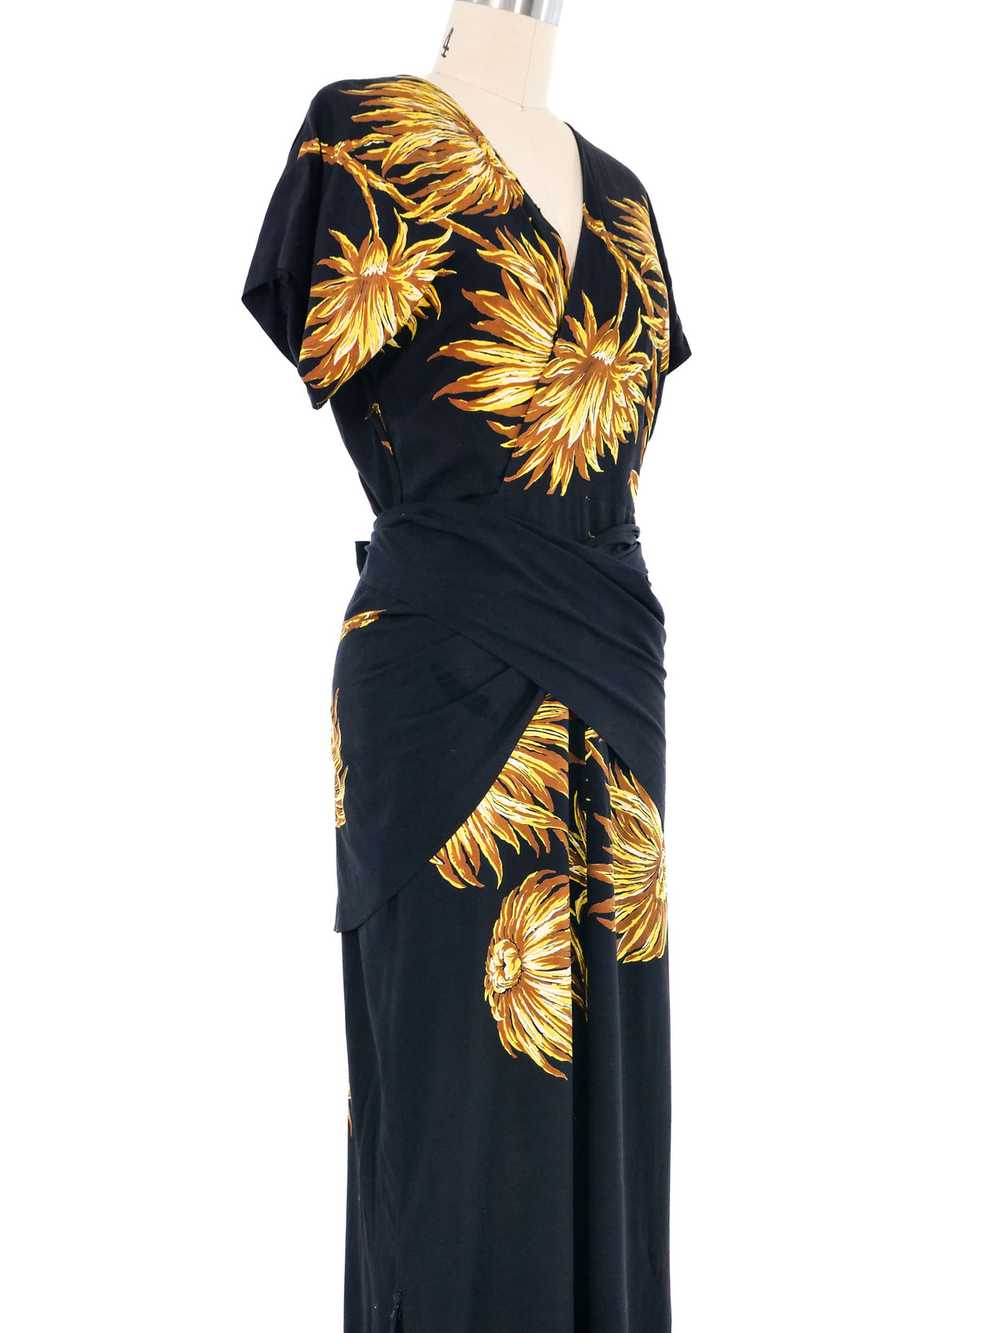 1940s Black Floral Wrap Dress - image 2